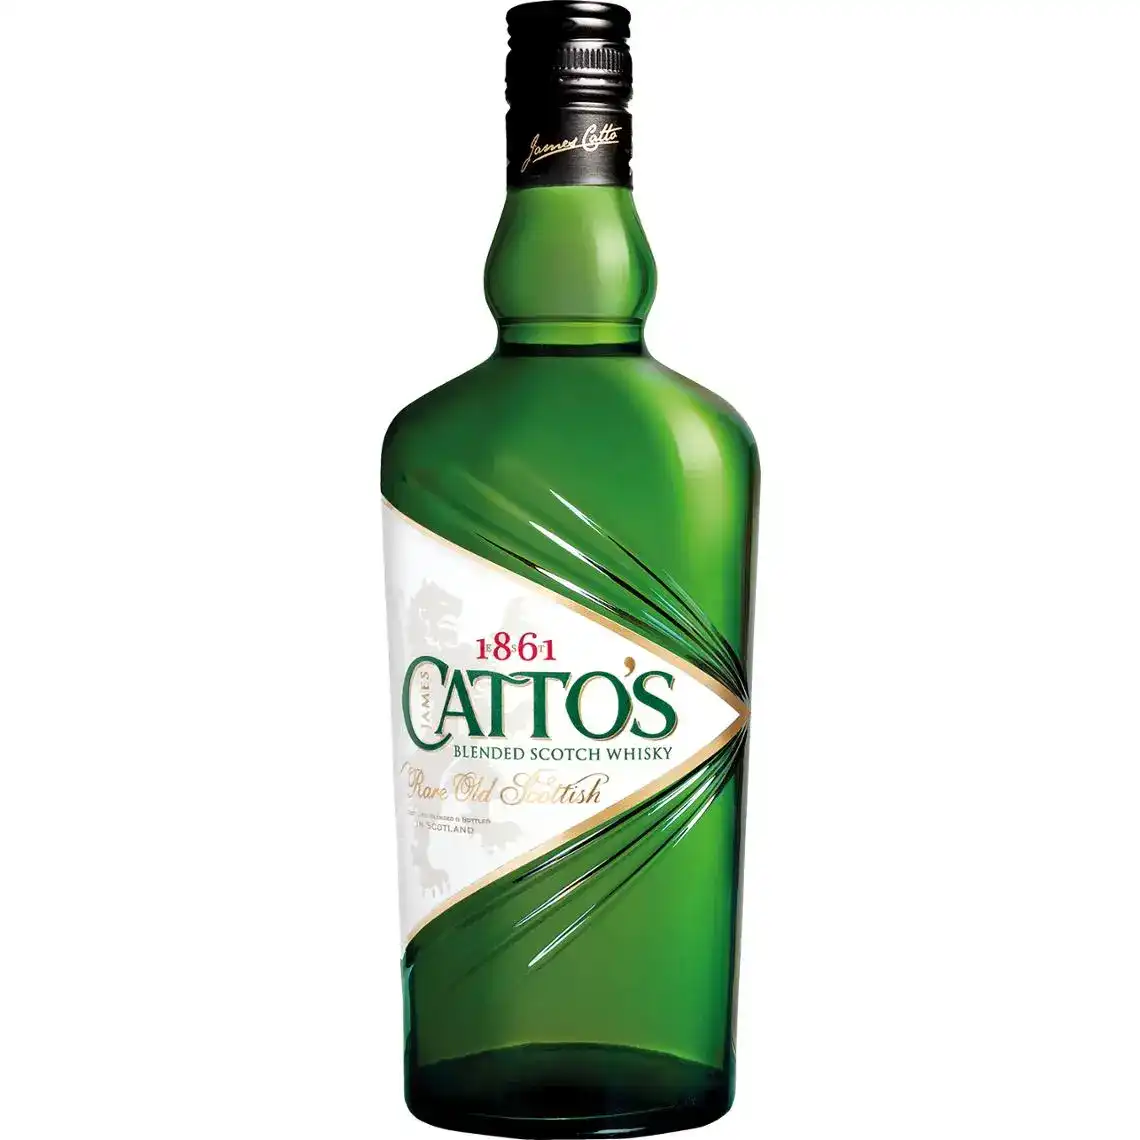 Віскі Cattos 40% 0.75 л